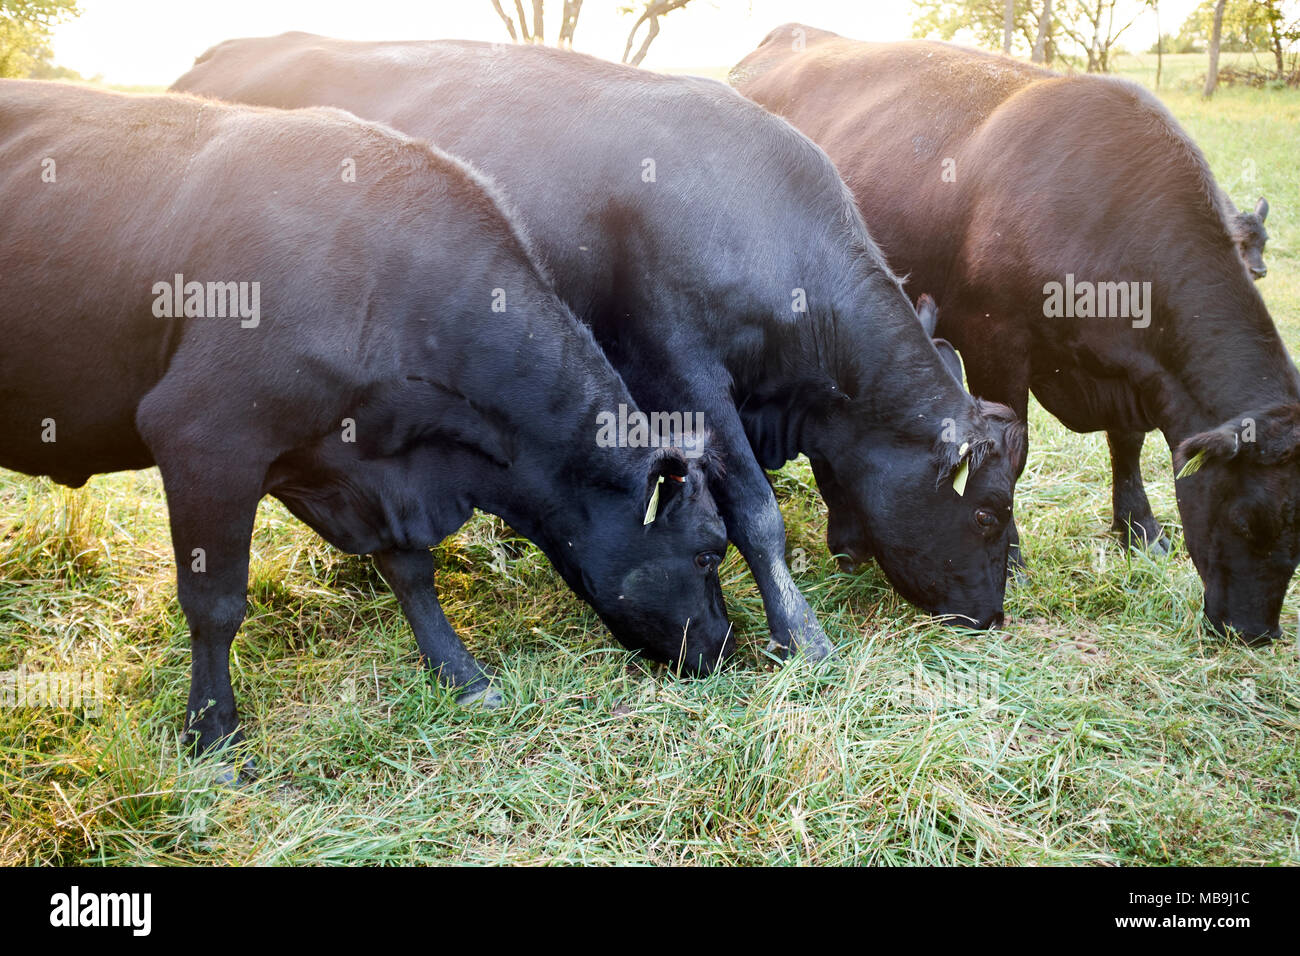 Herde von Rindfleisch grasende Kühe auf Gras in der Nähe zu sehen, mit Hintergrundbeleuchtung durch helles Aufflackern von der Sonne Stockfoto